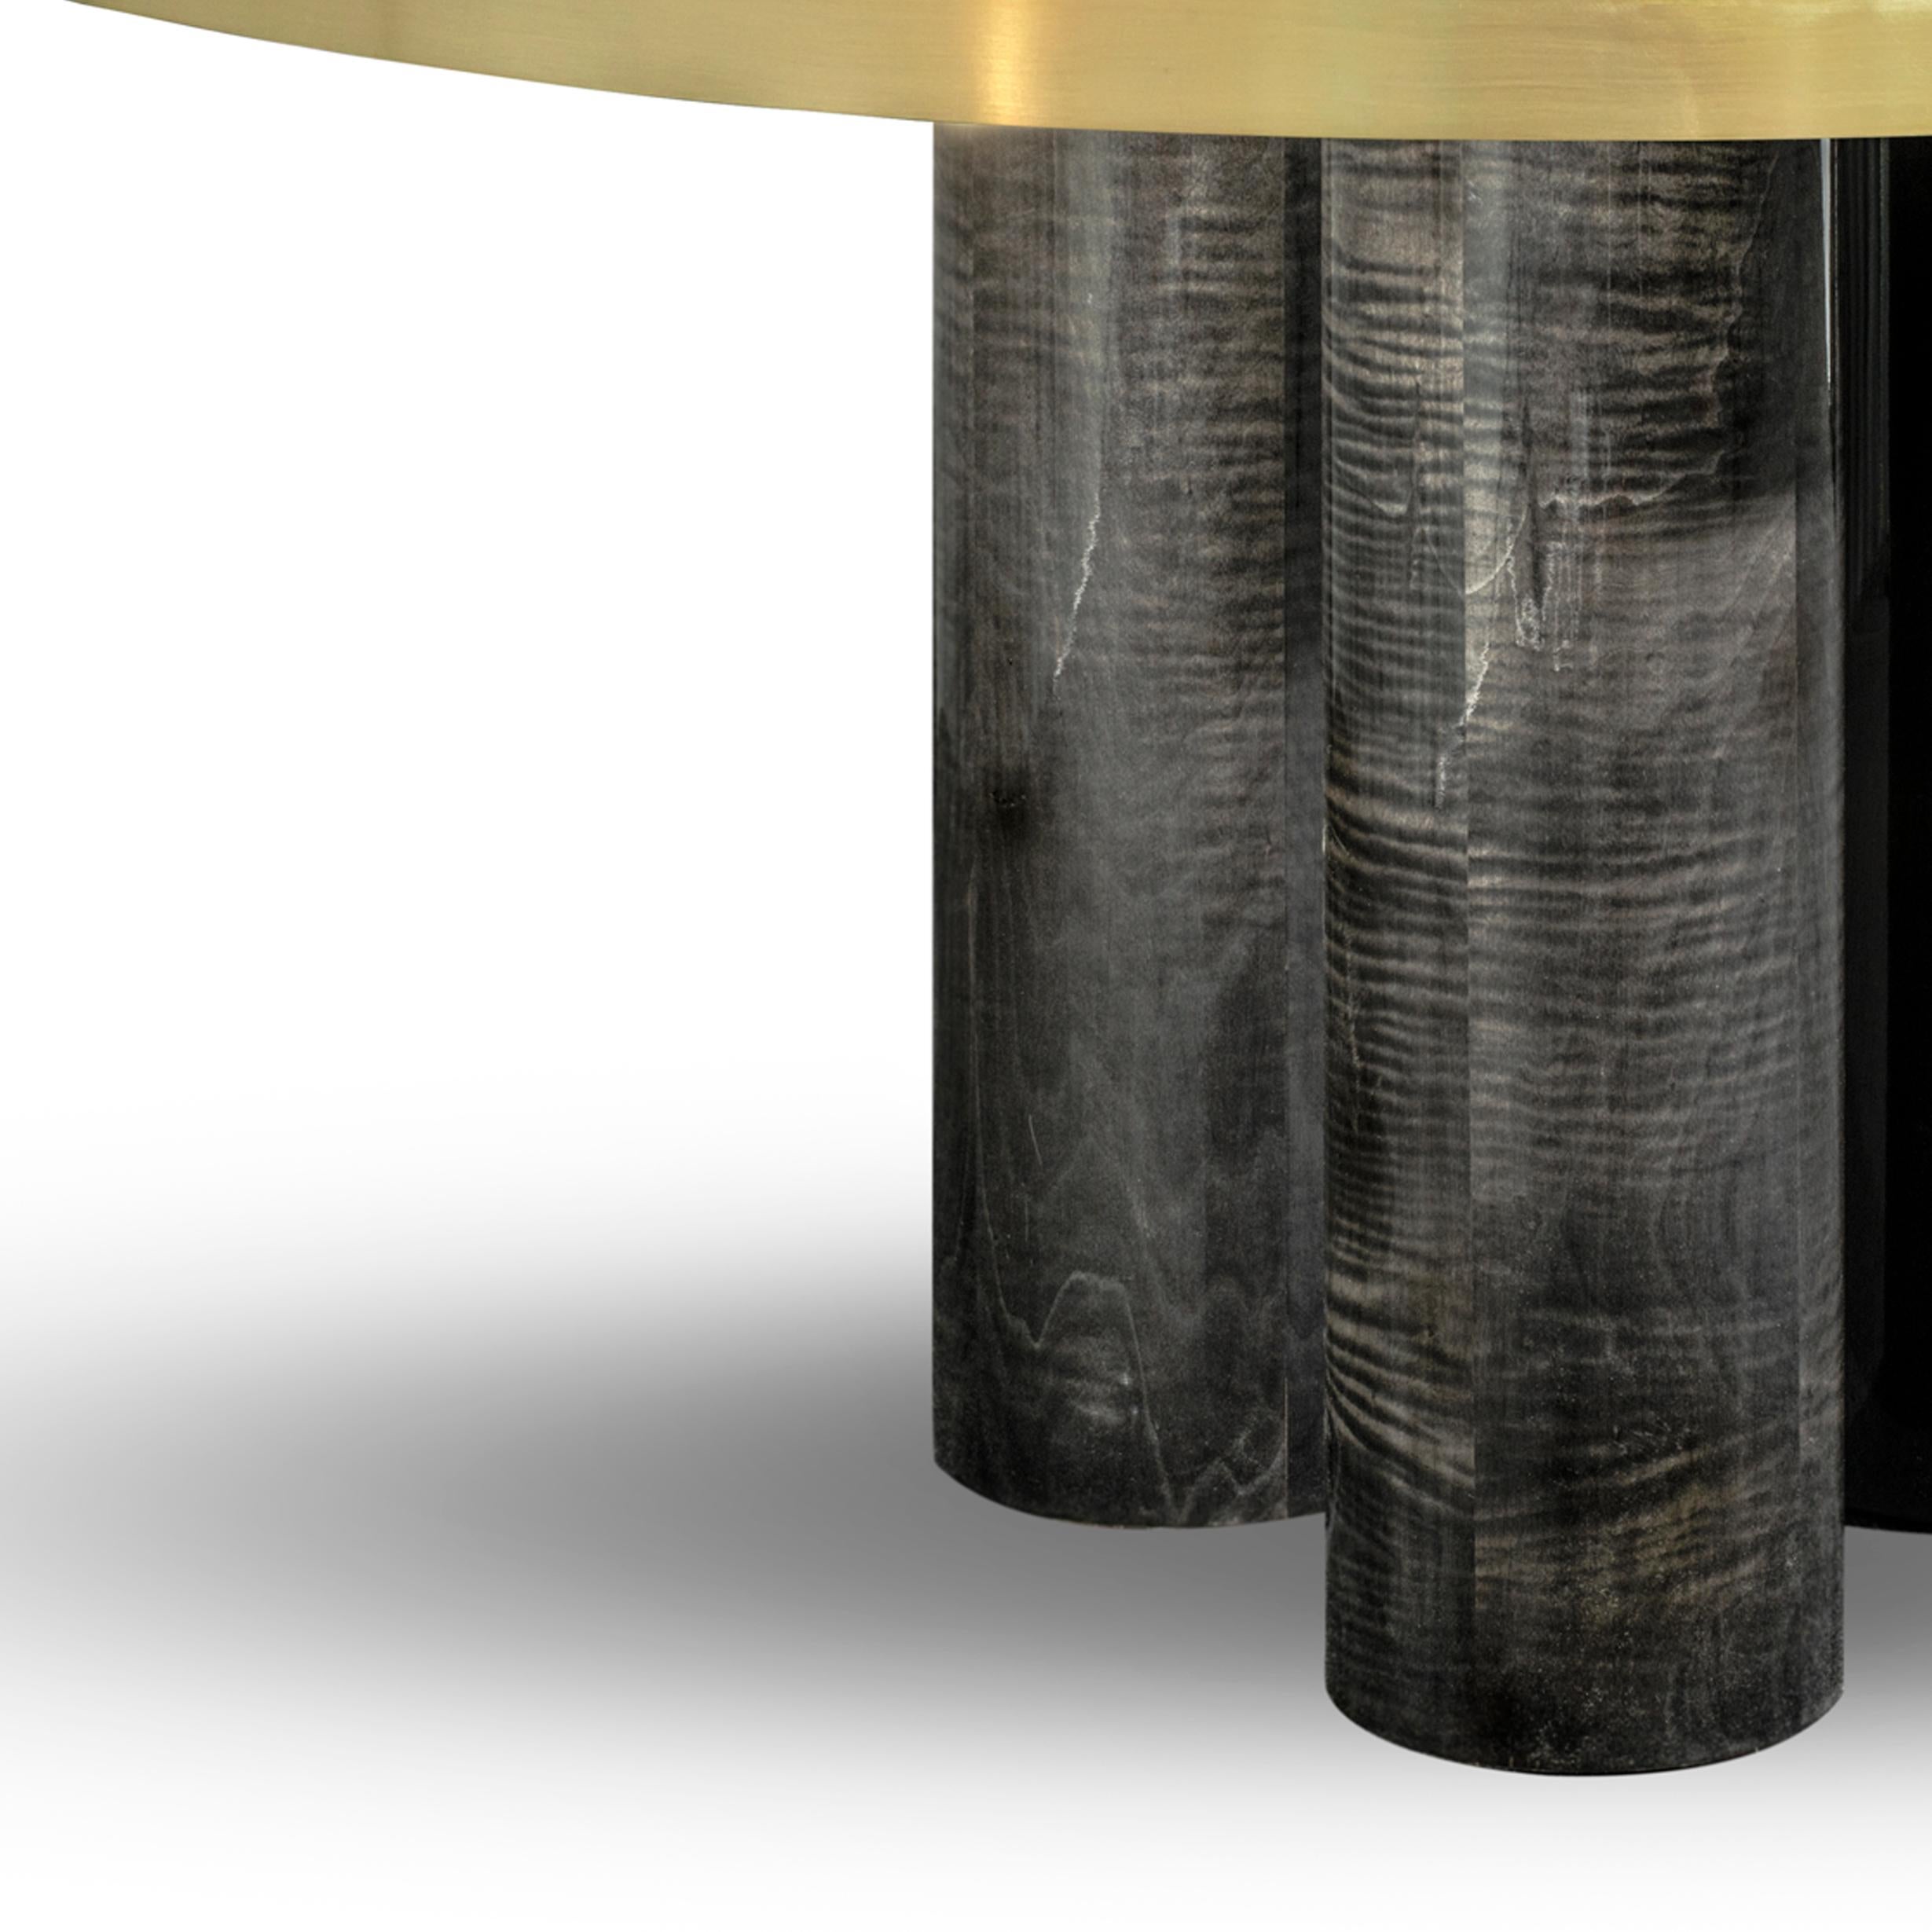 Table de salle à manger ovale Ray, en bois de sikomoro gris frisé brillant par Duistt

Contrairement à sa conception première, la table de salle à manger Ray Oval se présente avec une silhouette plus robuste. Les lignes délicates en laiton brossé